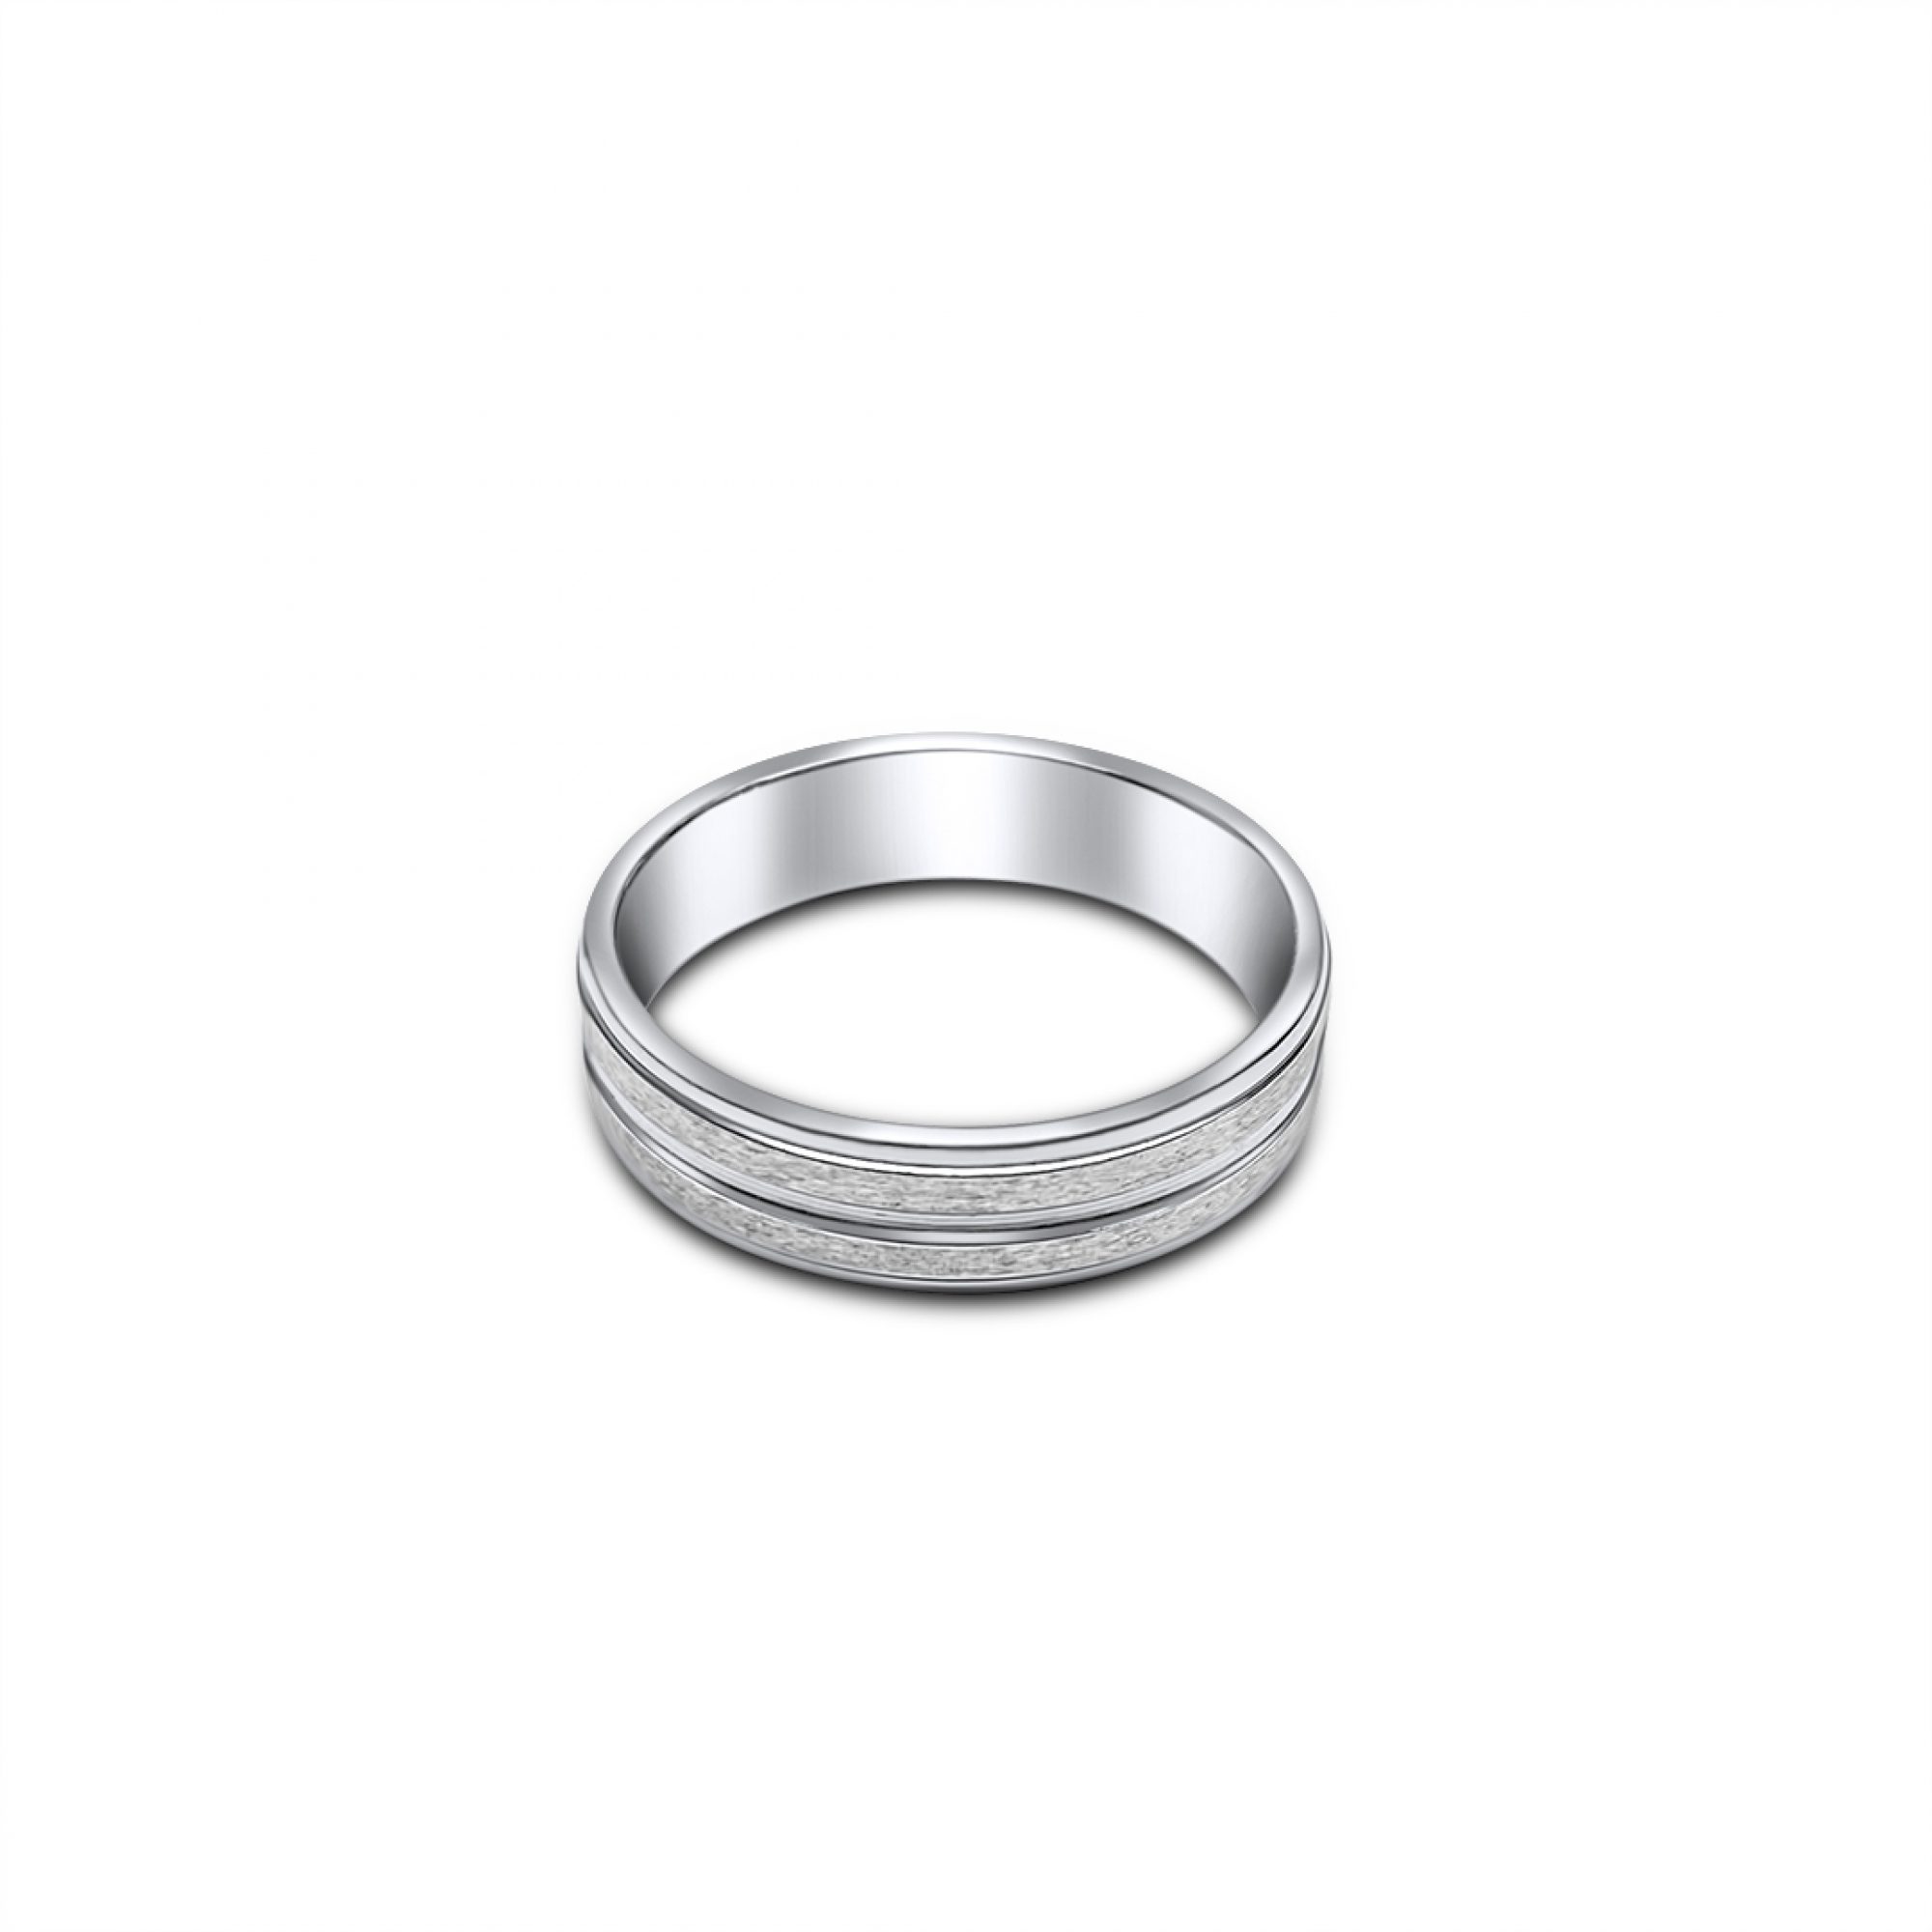 Engraved steel ring